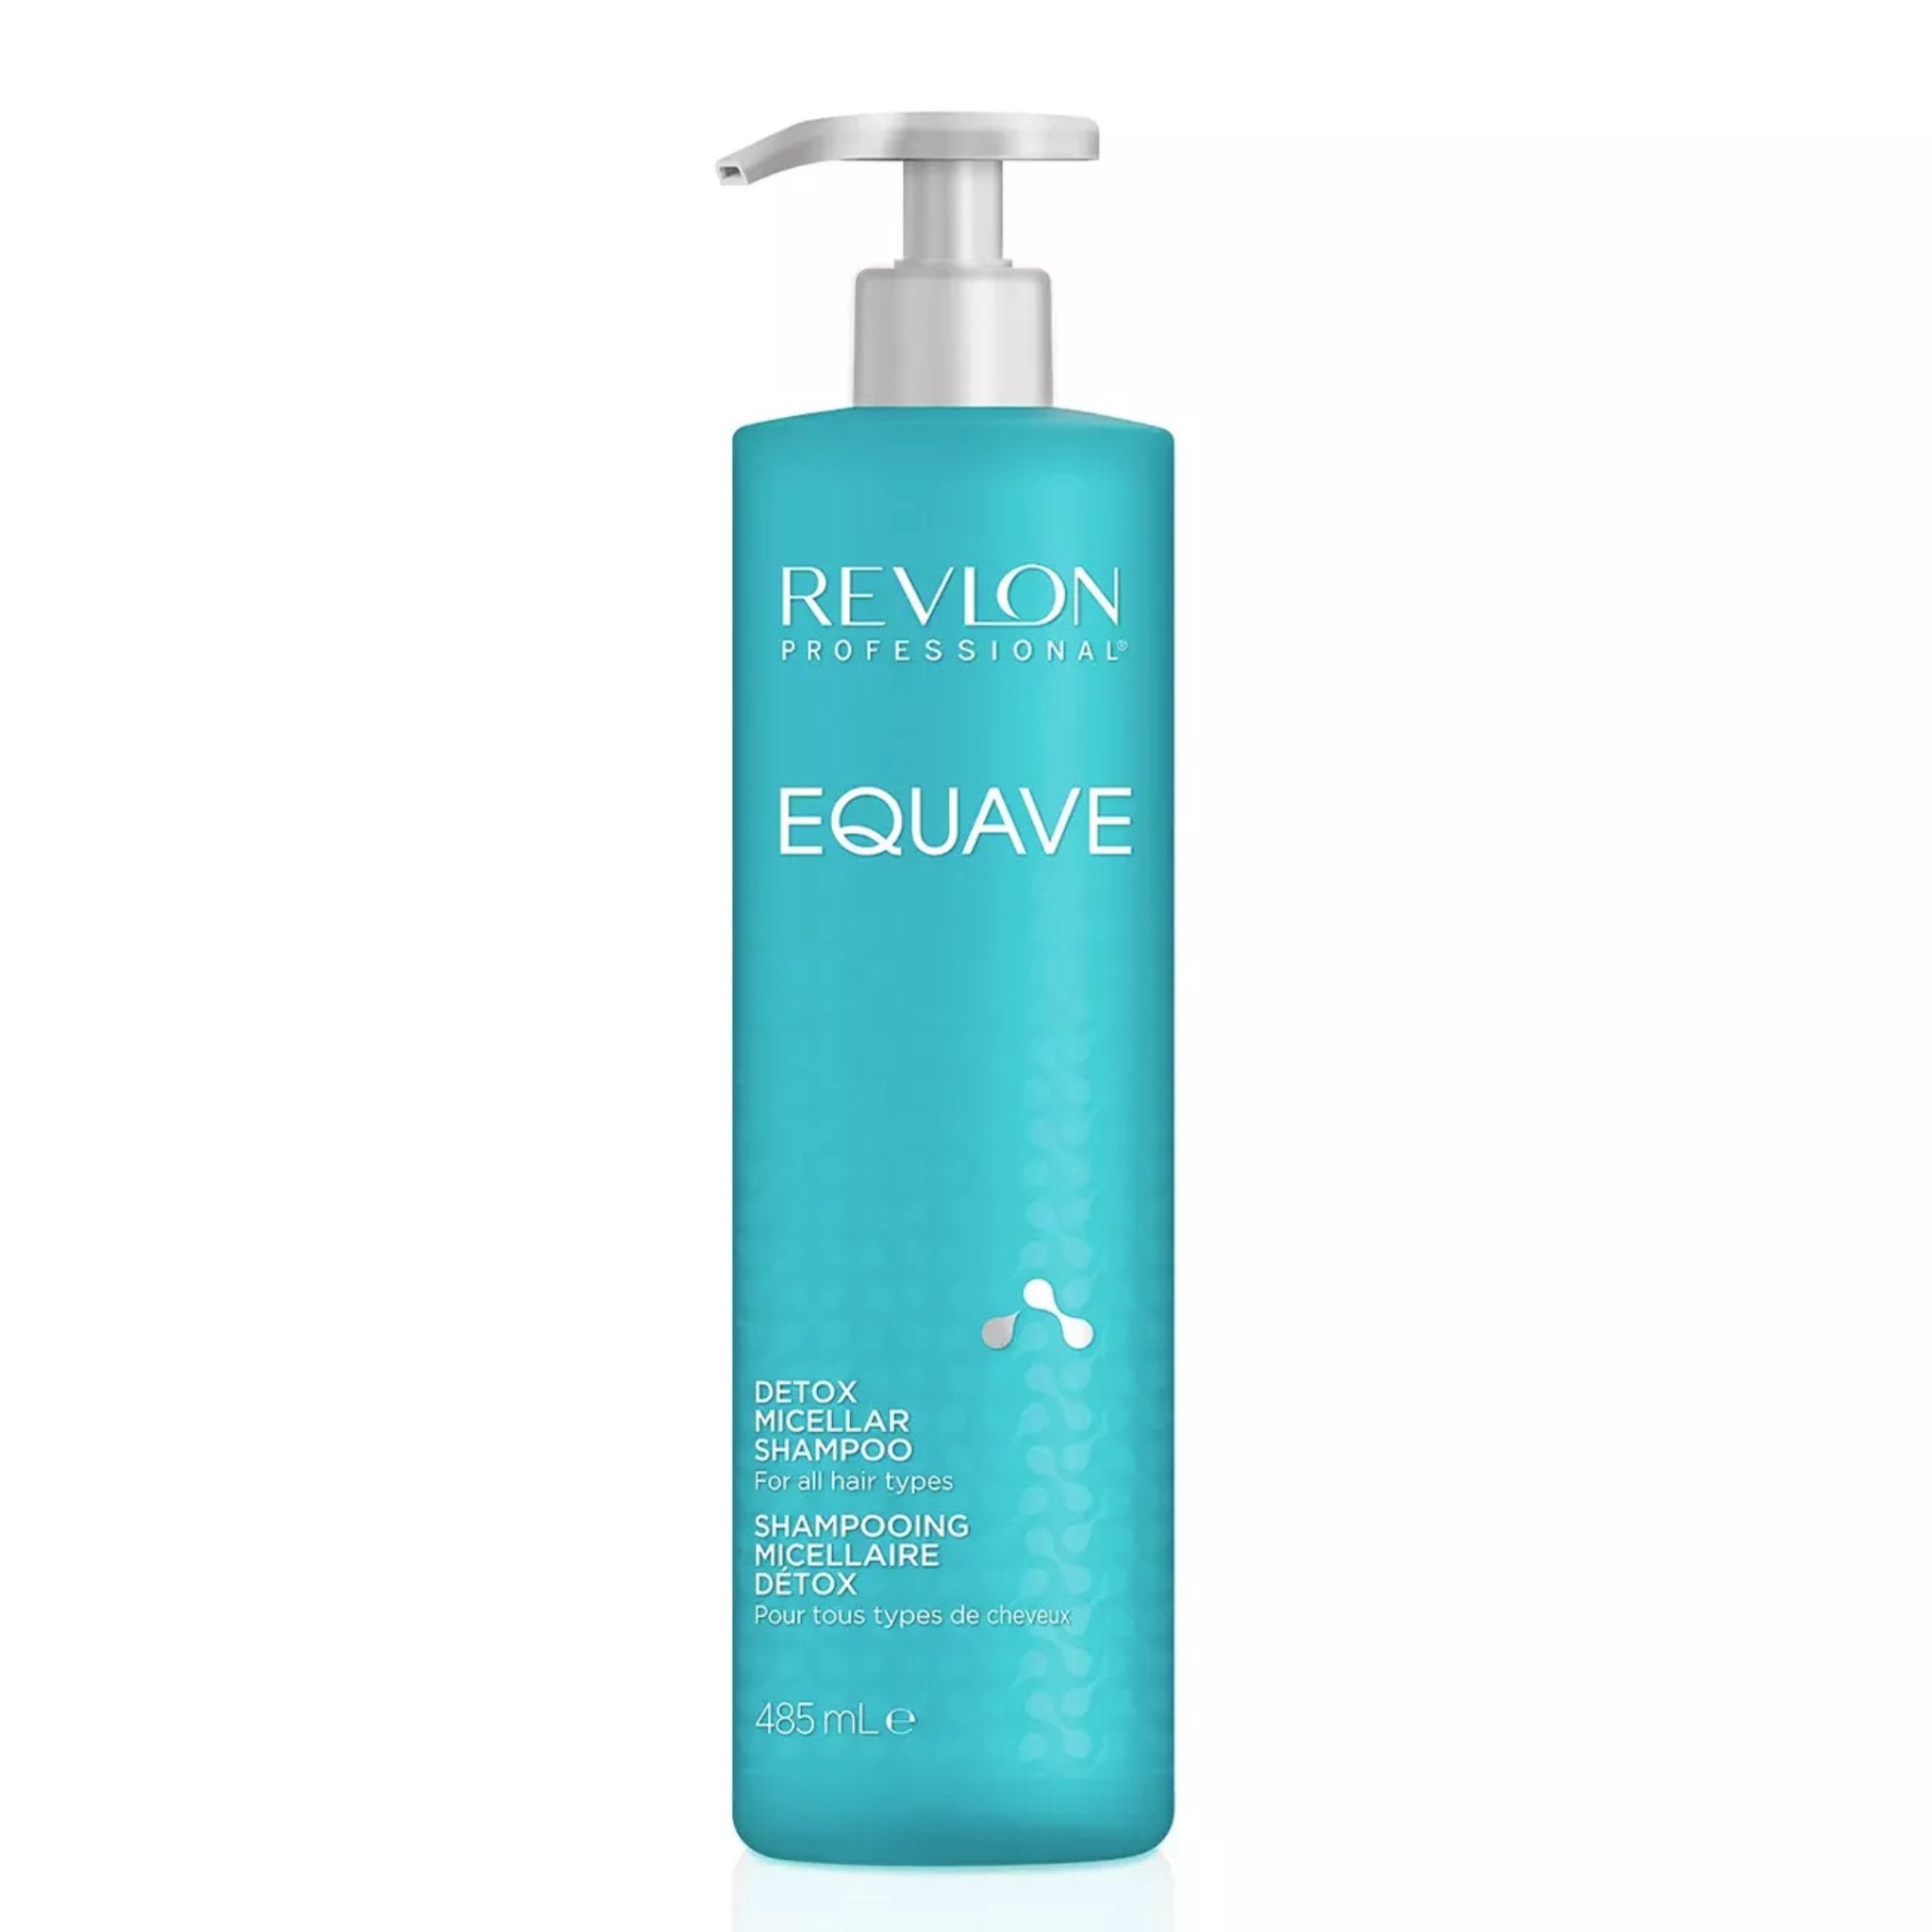 Revlon. Equave Shampoing Micellaire Détox - 485 ml - Concept C. Shop